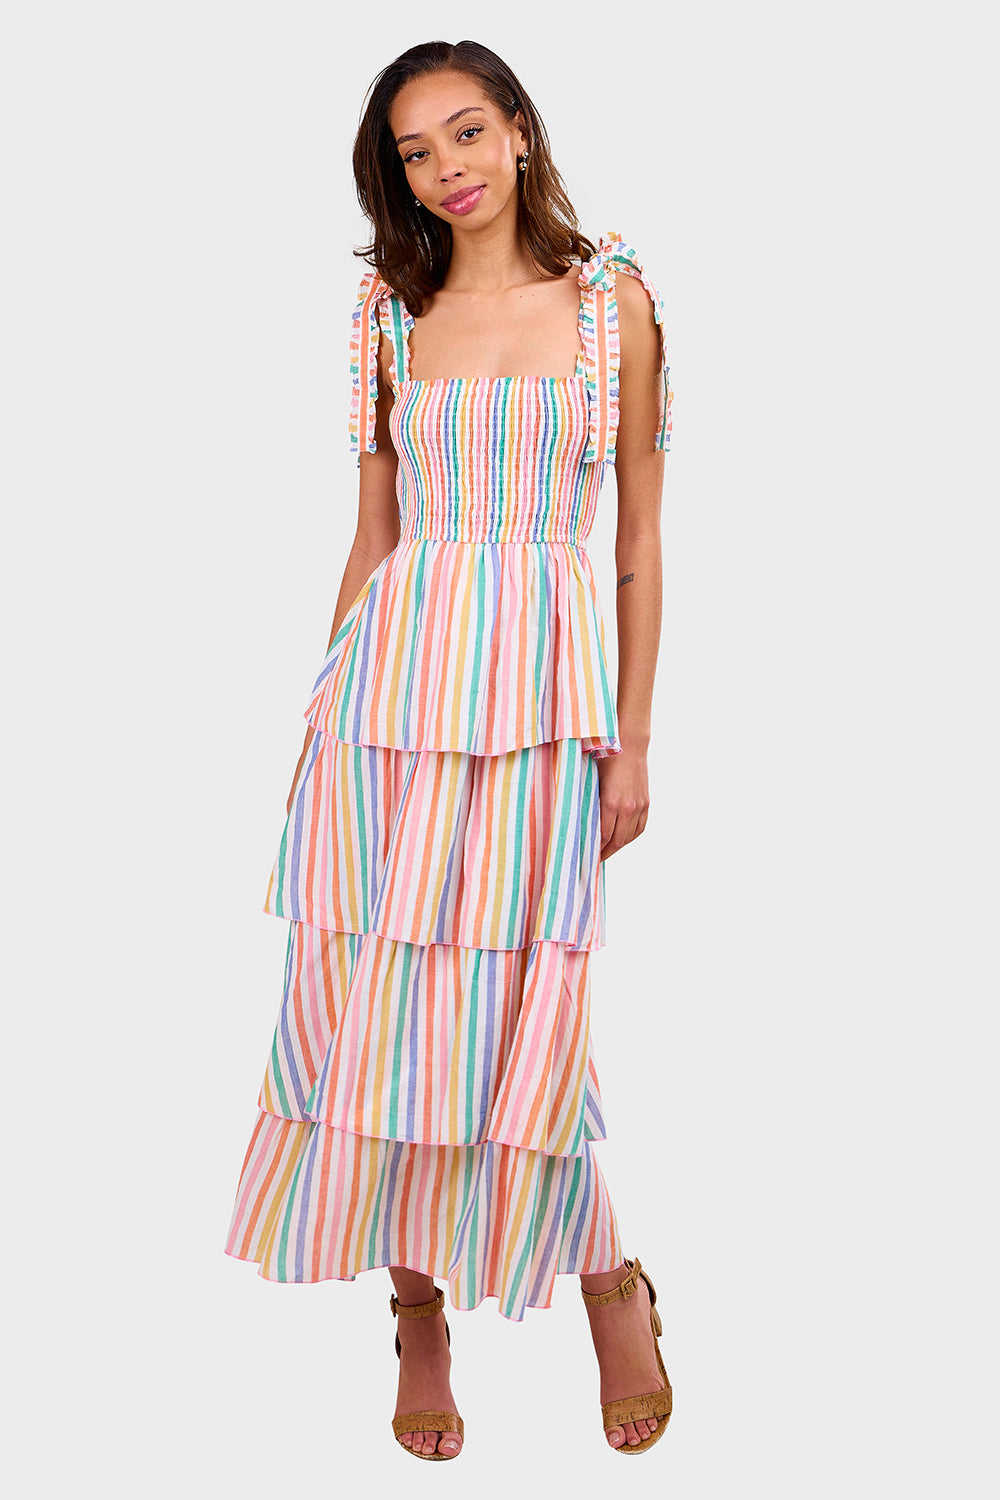 Zazie Dress - Rainbow Stripe